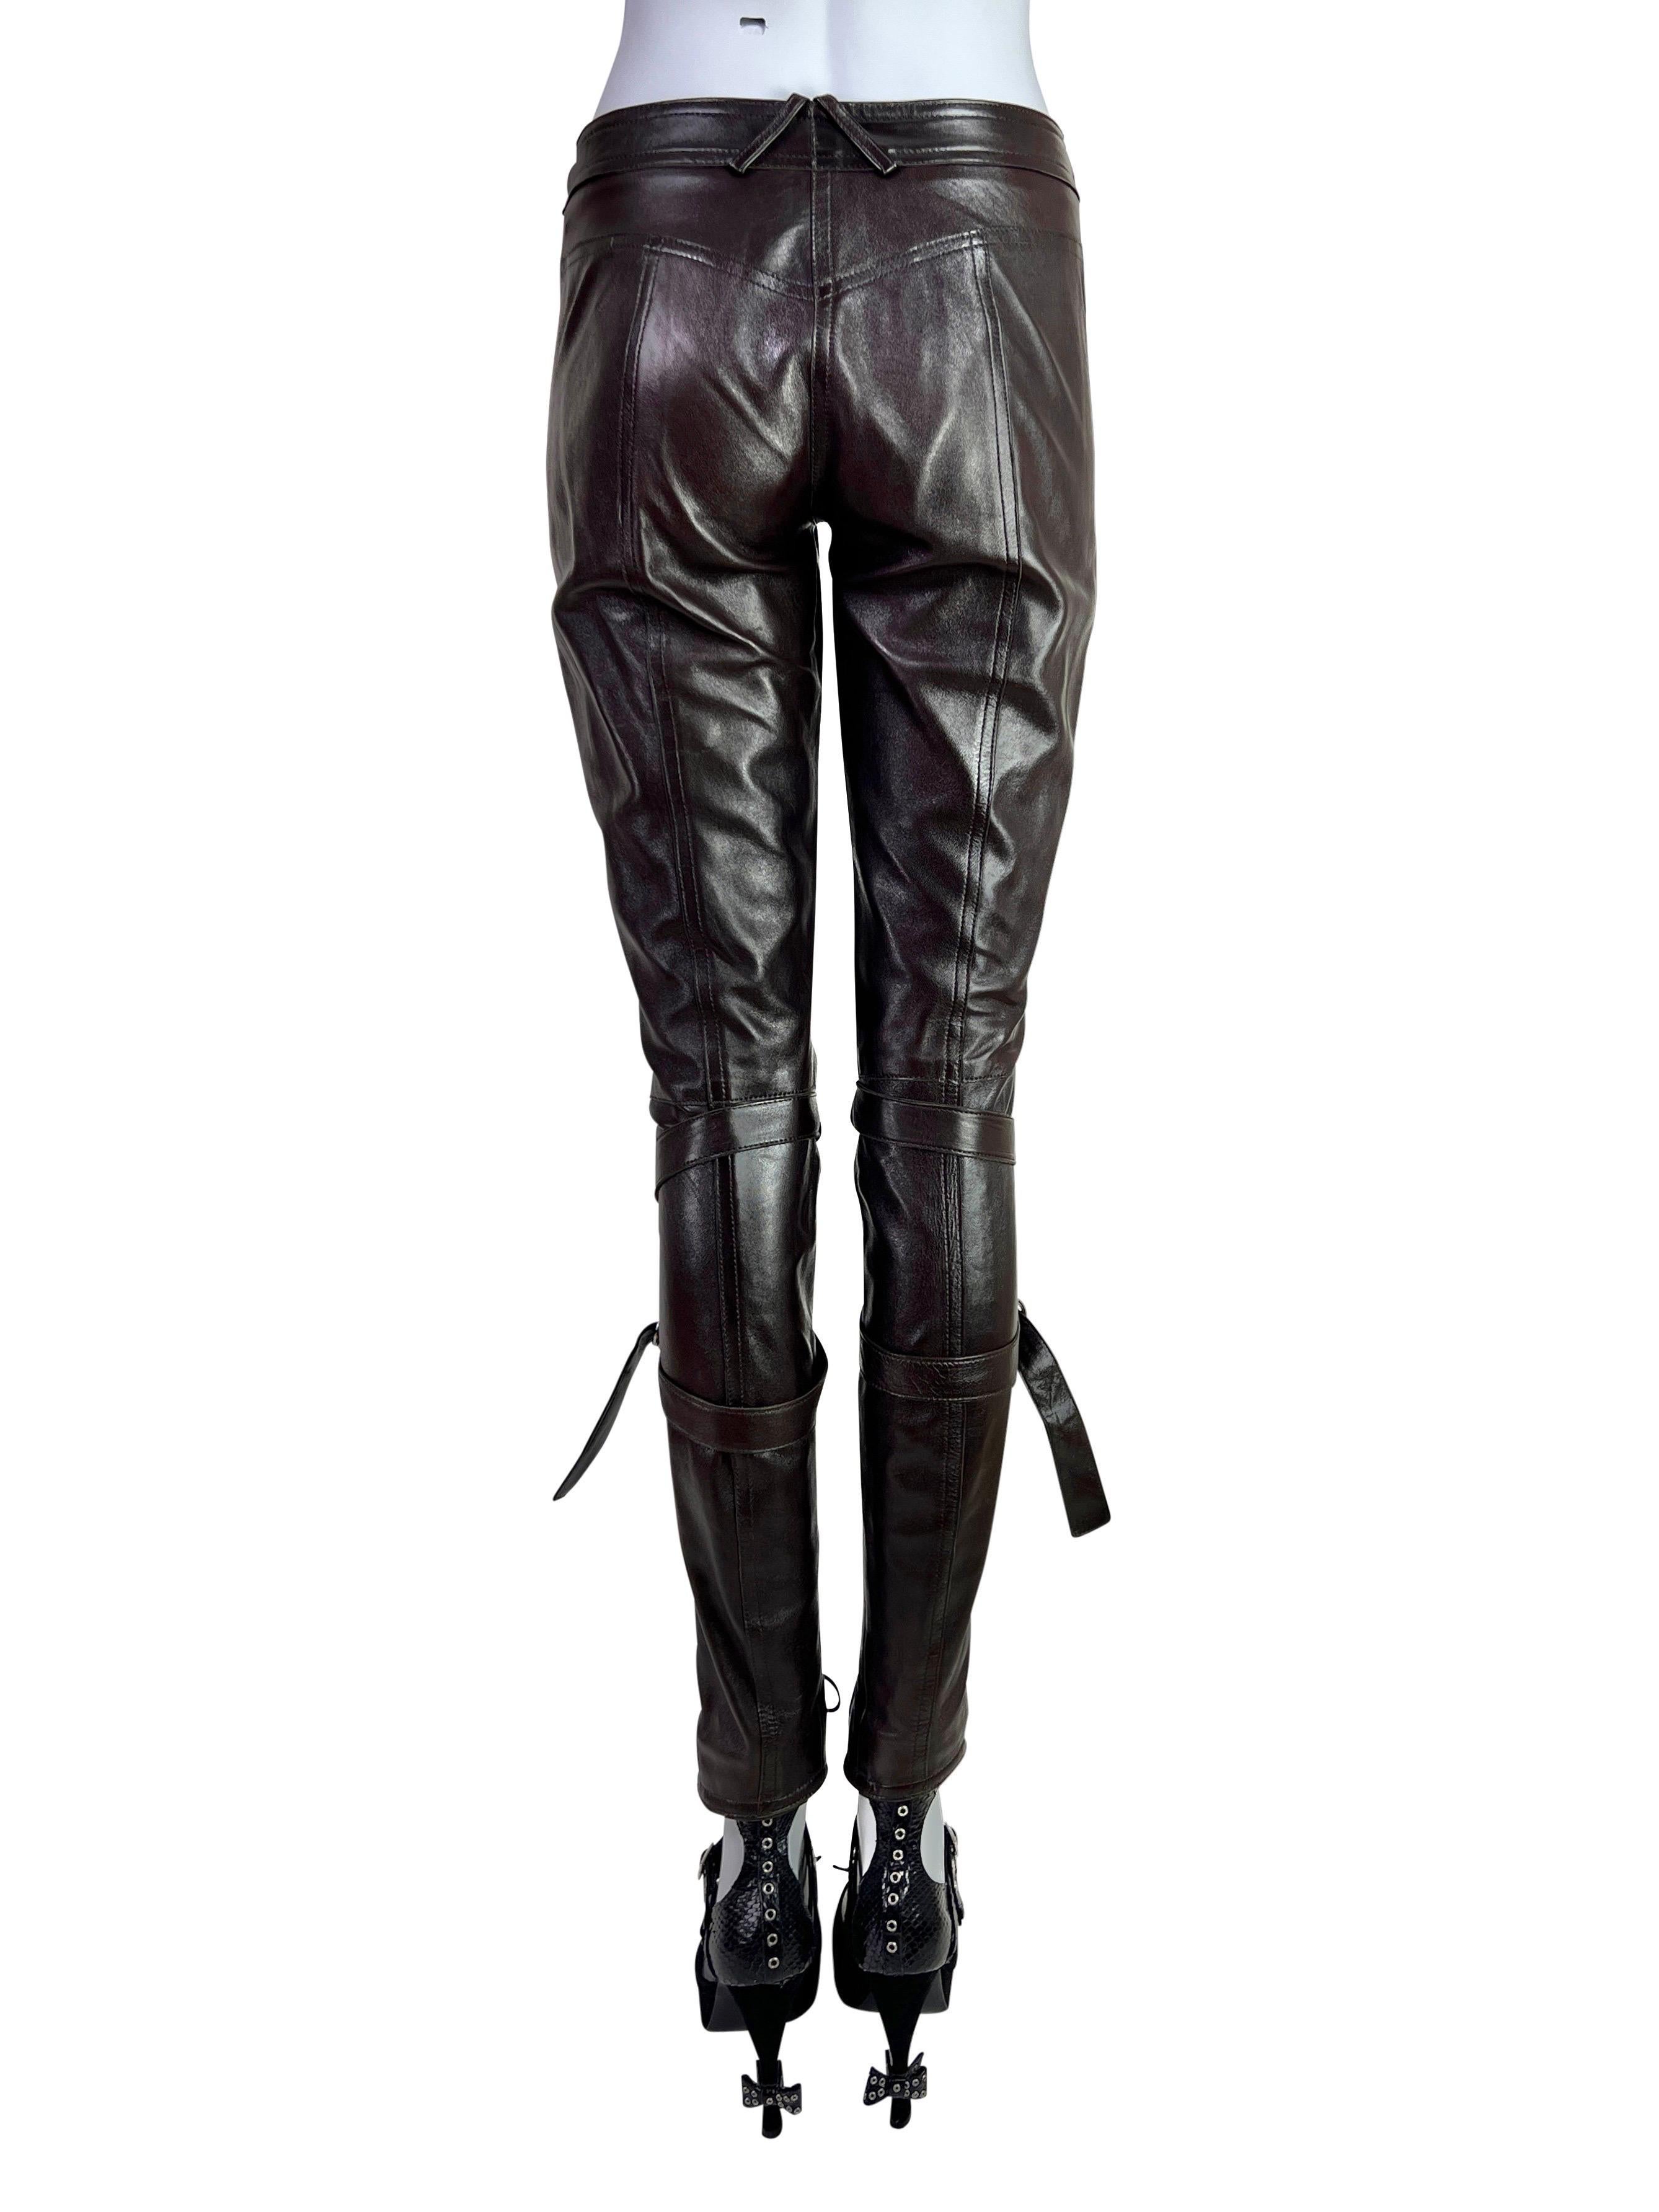 Dior by John Galliano automne 2003 - Pantalon en cuir à lacets couleur chocolat foncé en vente 3